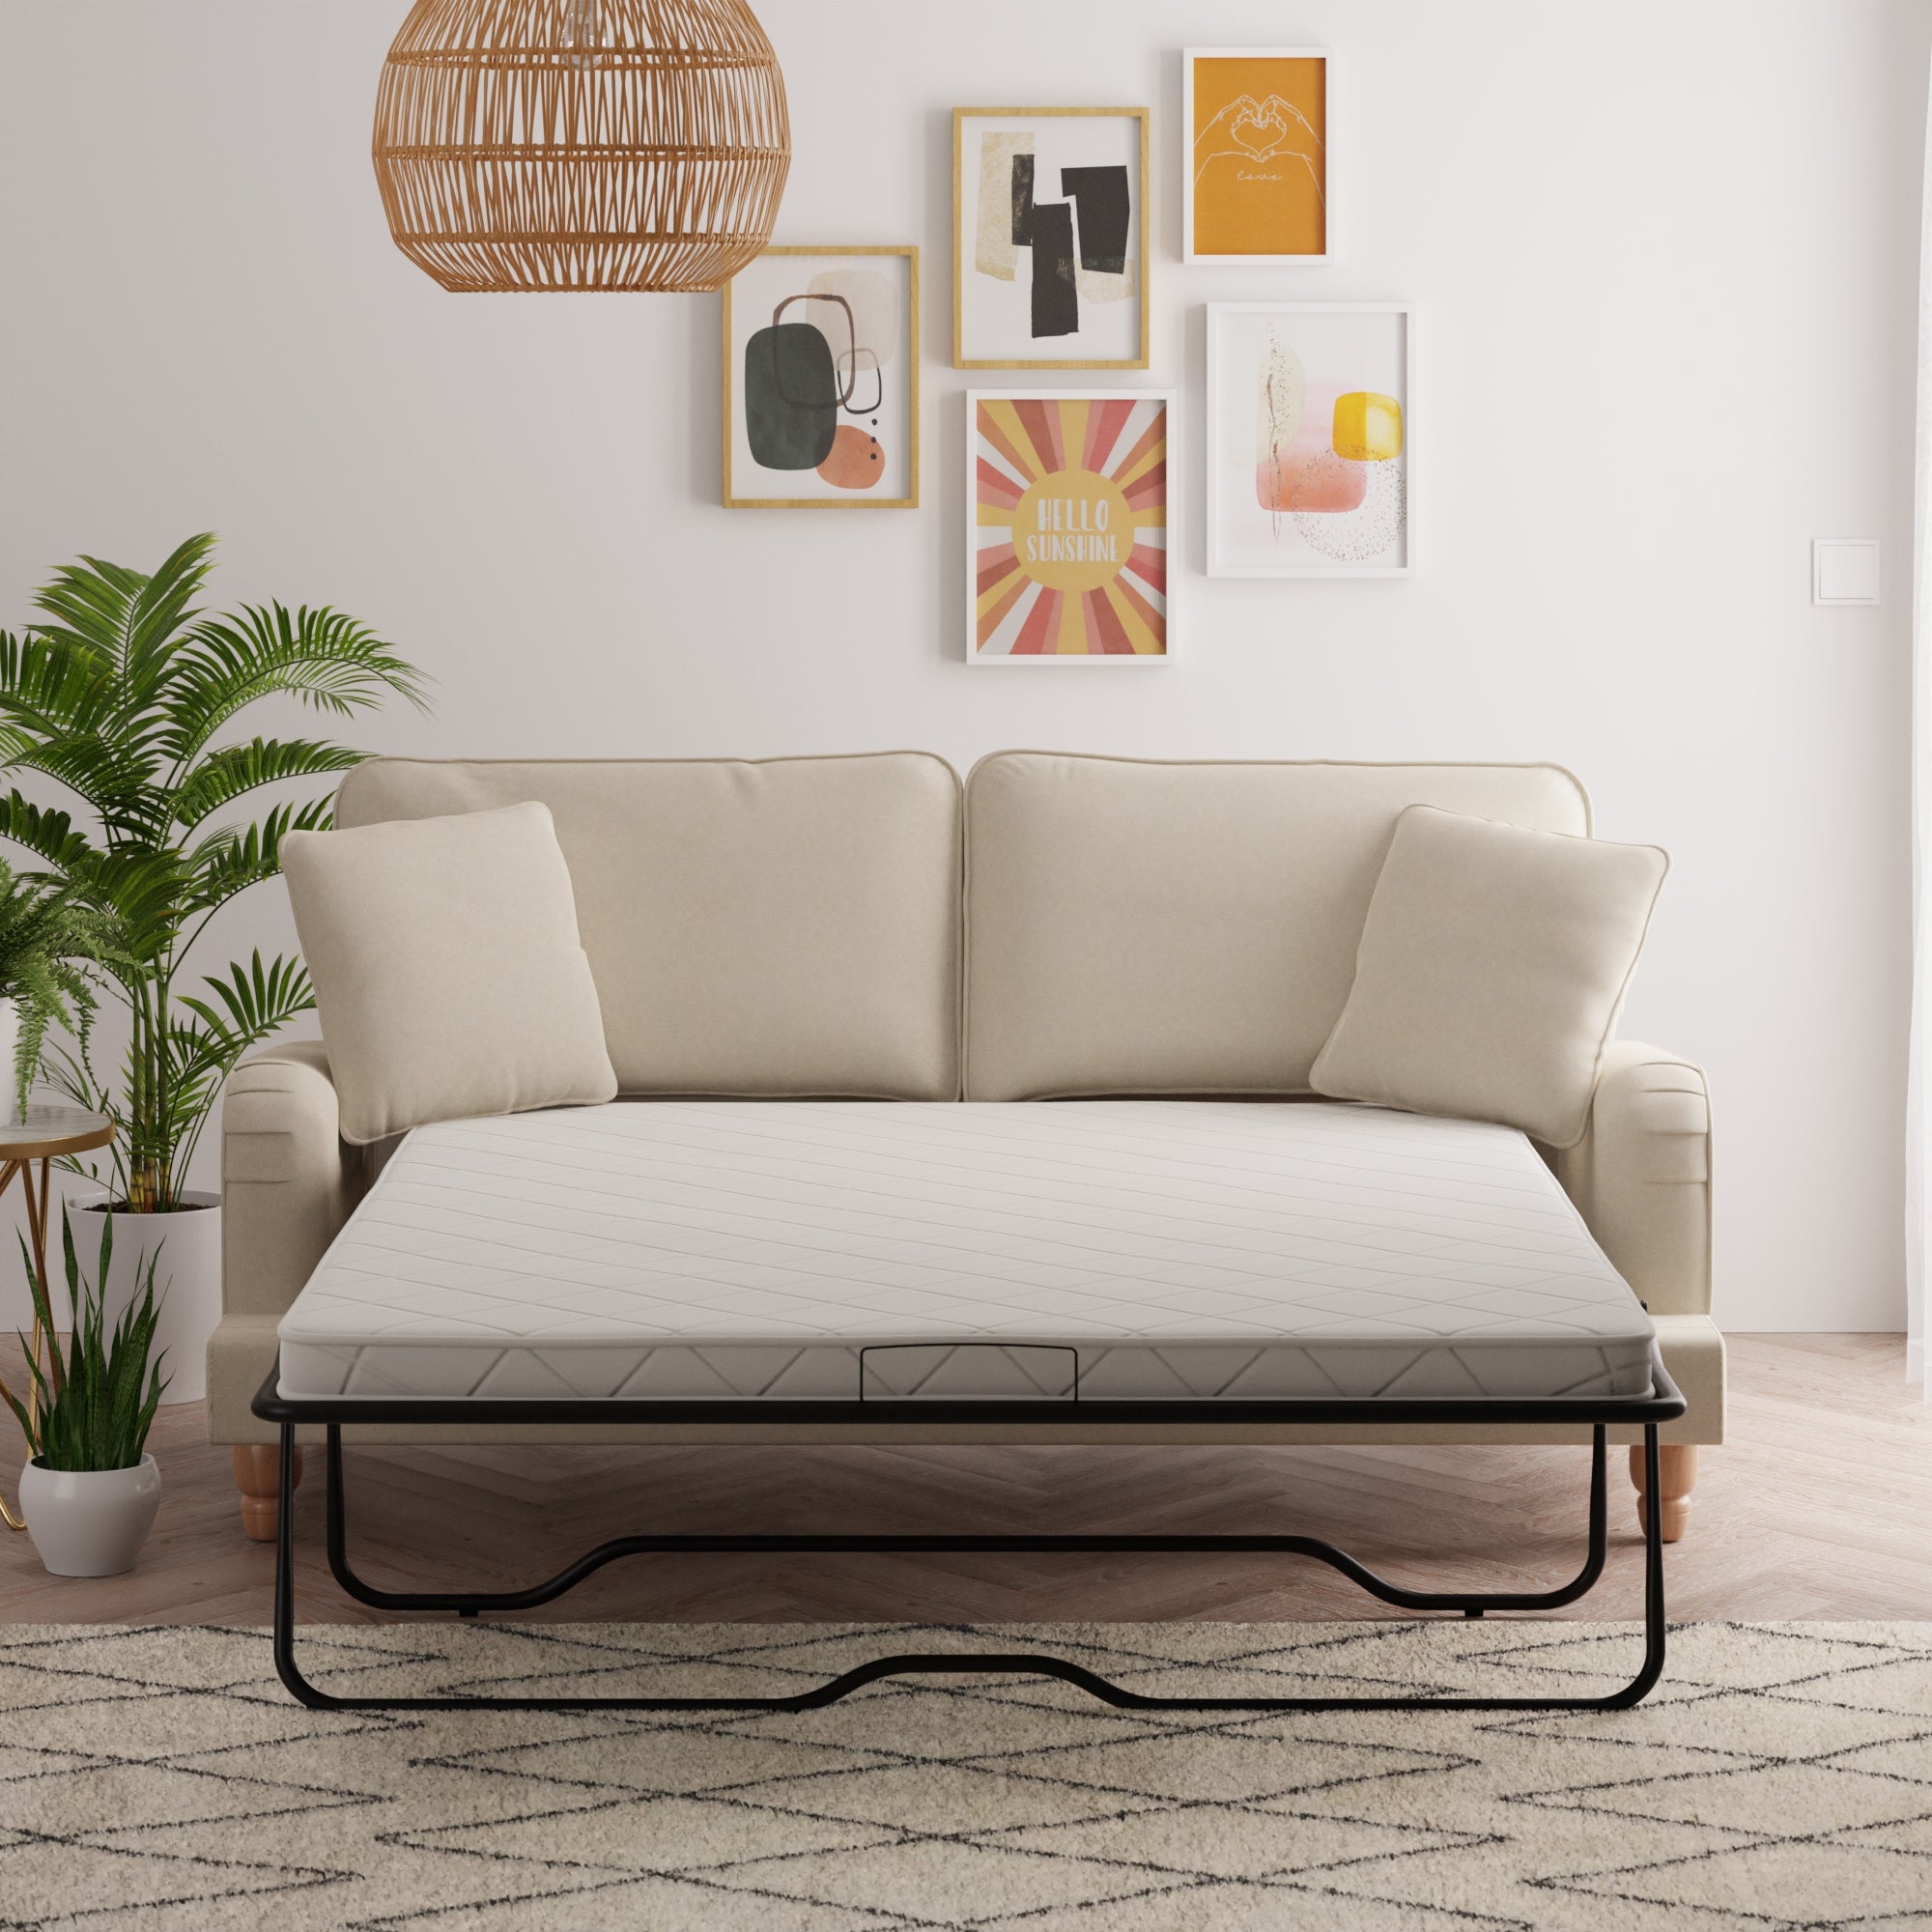 Beatrice Luna Fabric sofa bed